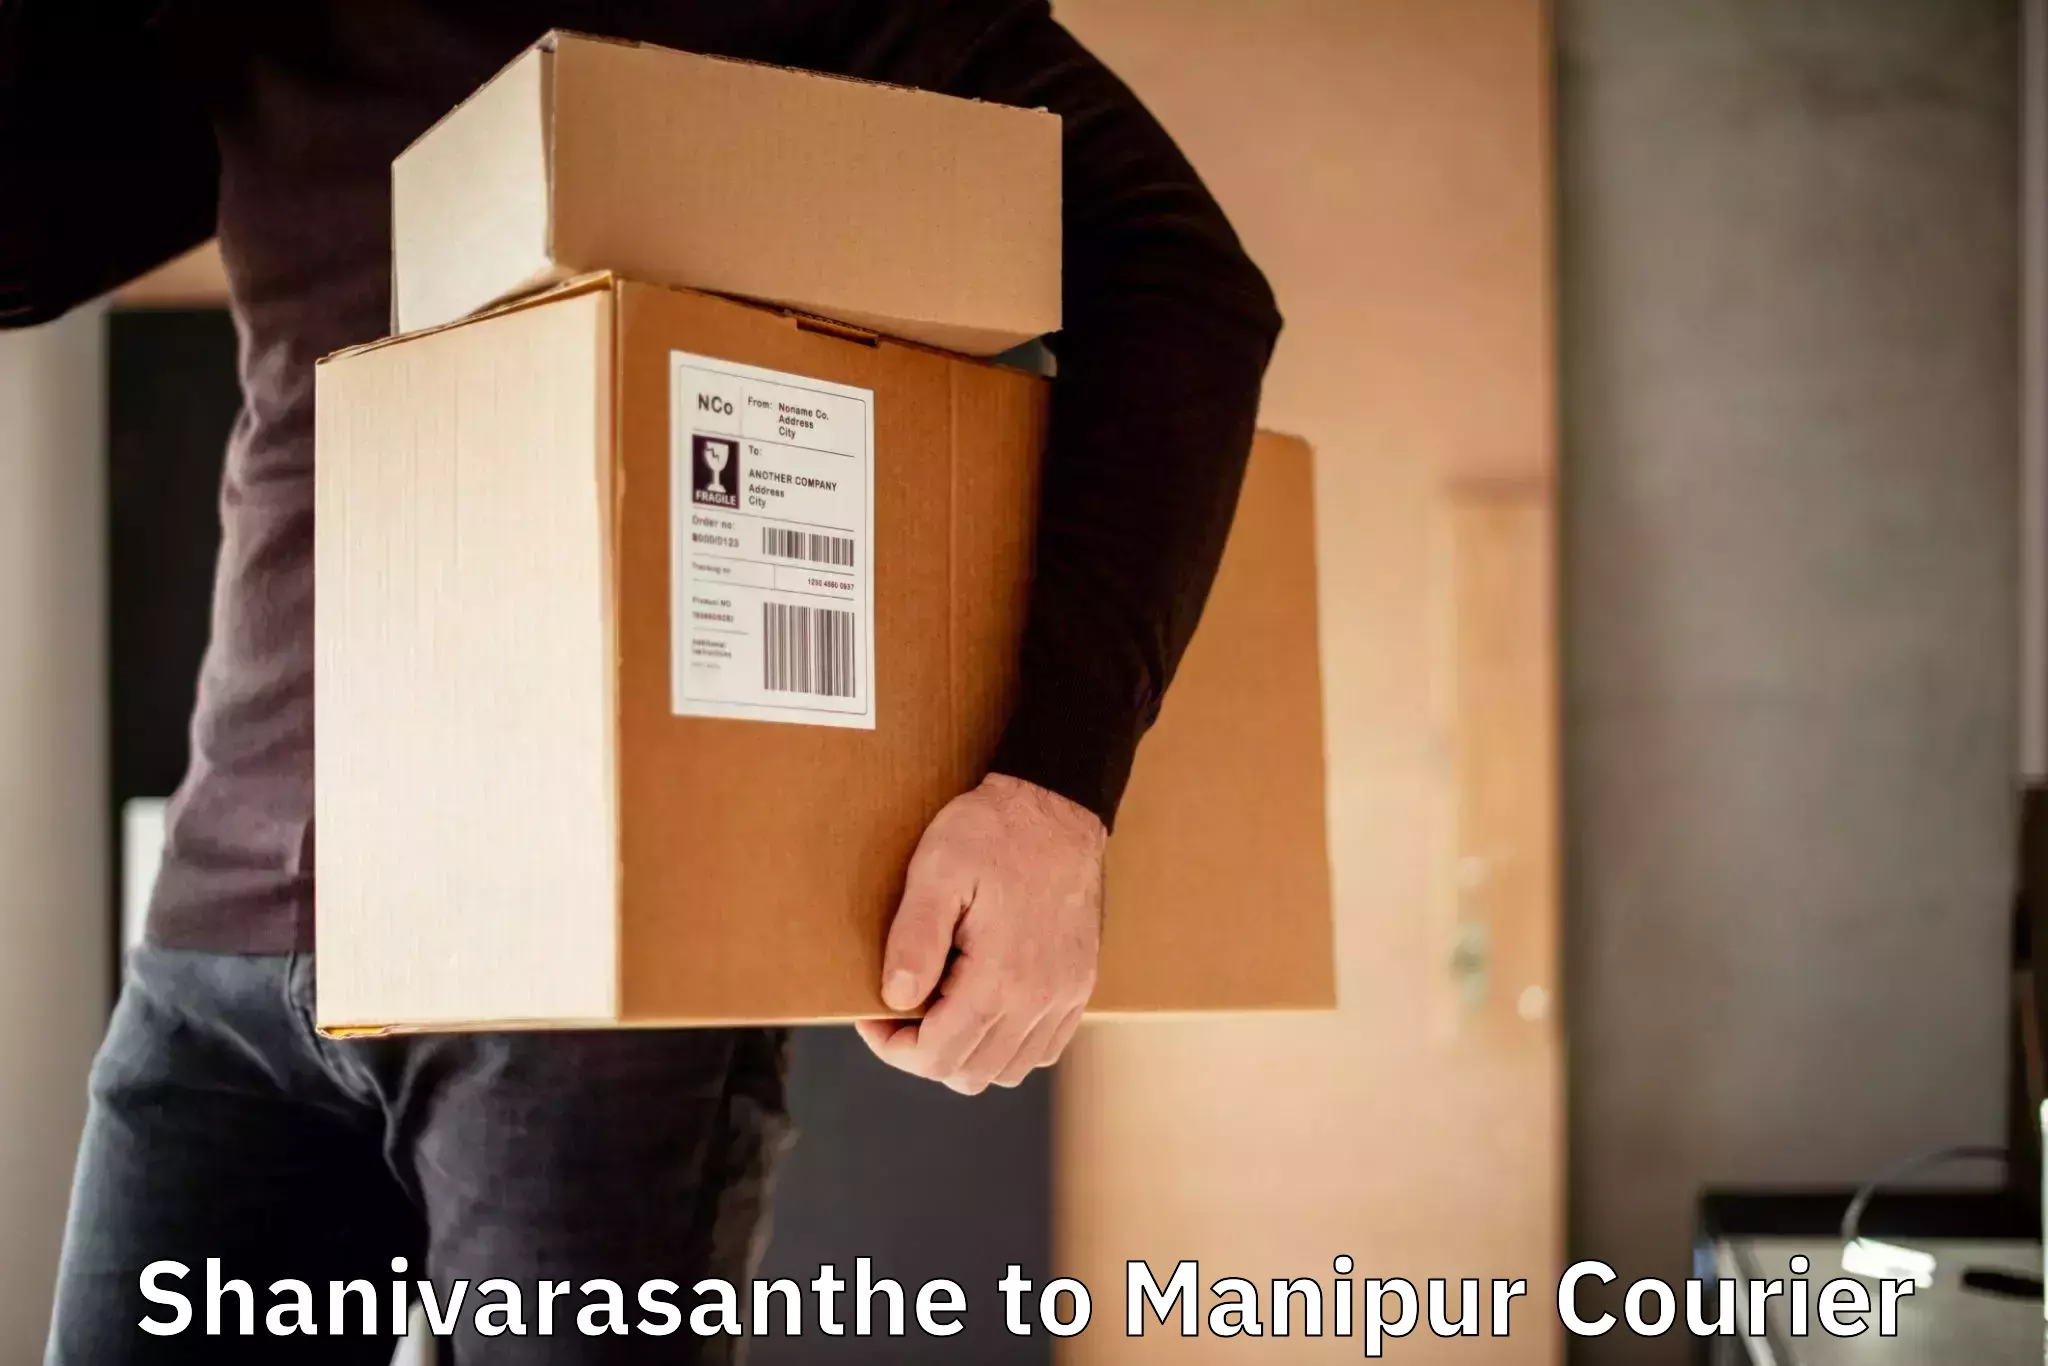 Courier service comparison Shanivarasanthe to Churachandpur